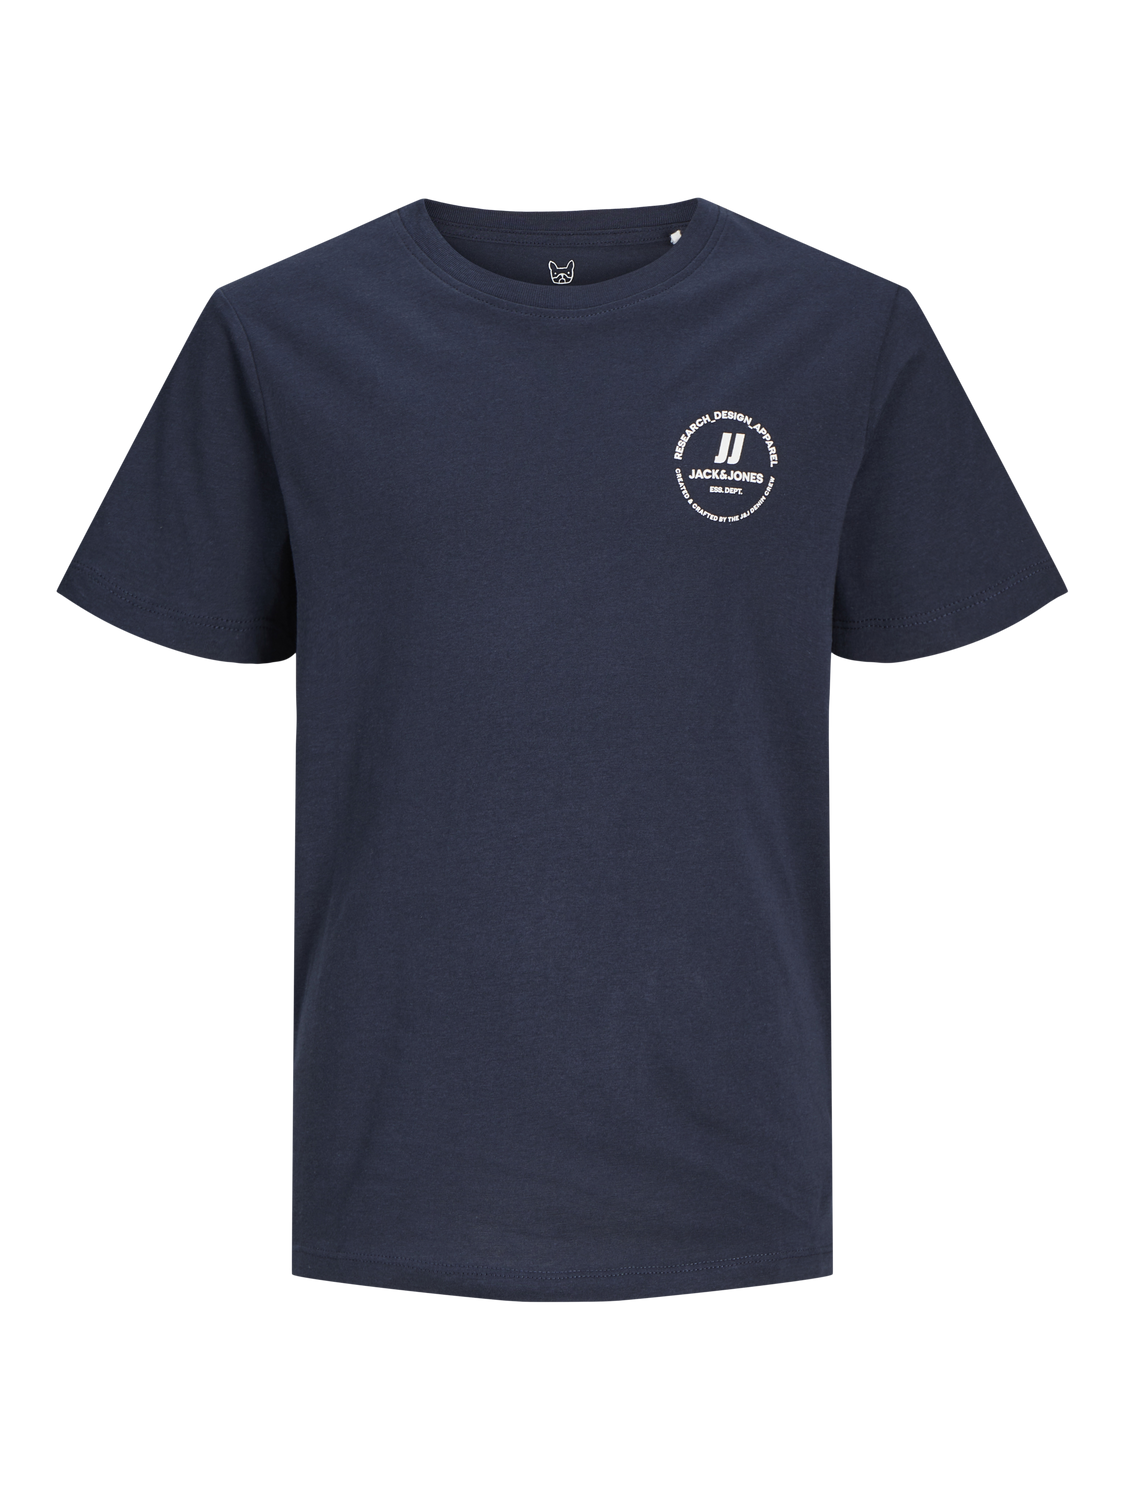 Jack & Jones Trykk T-skjorte Mini -Navy Blazer - 12259964